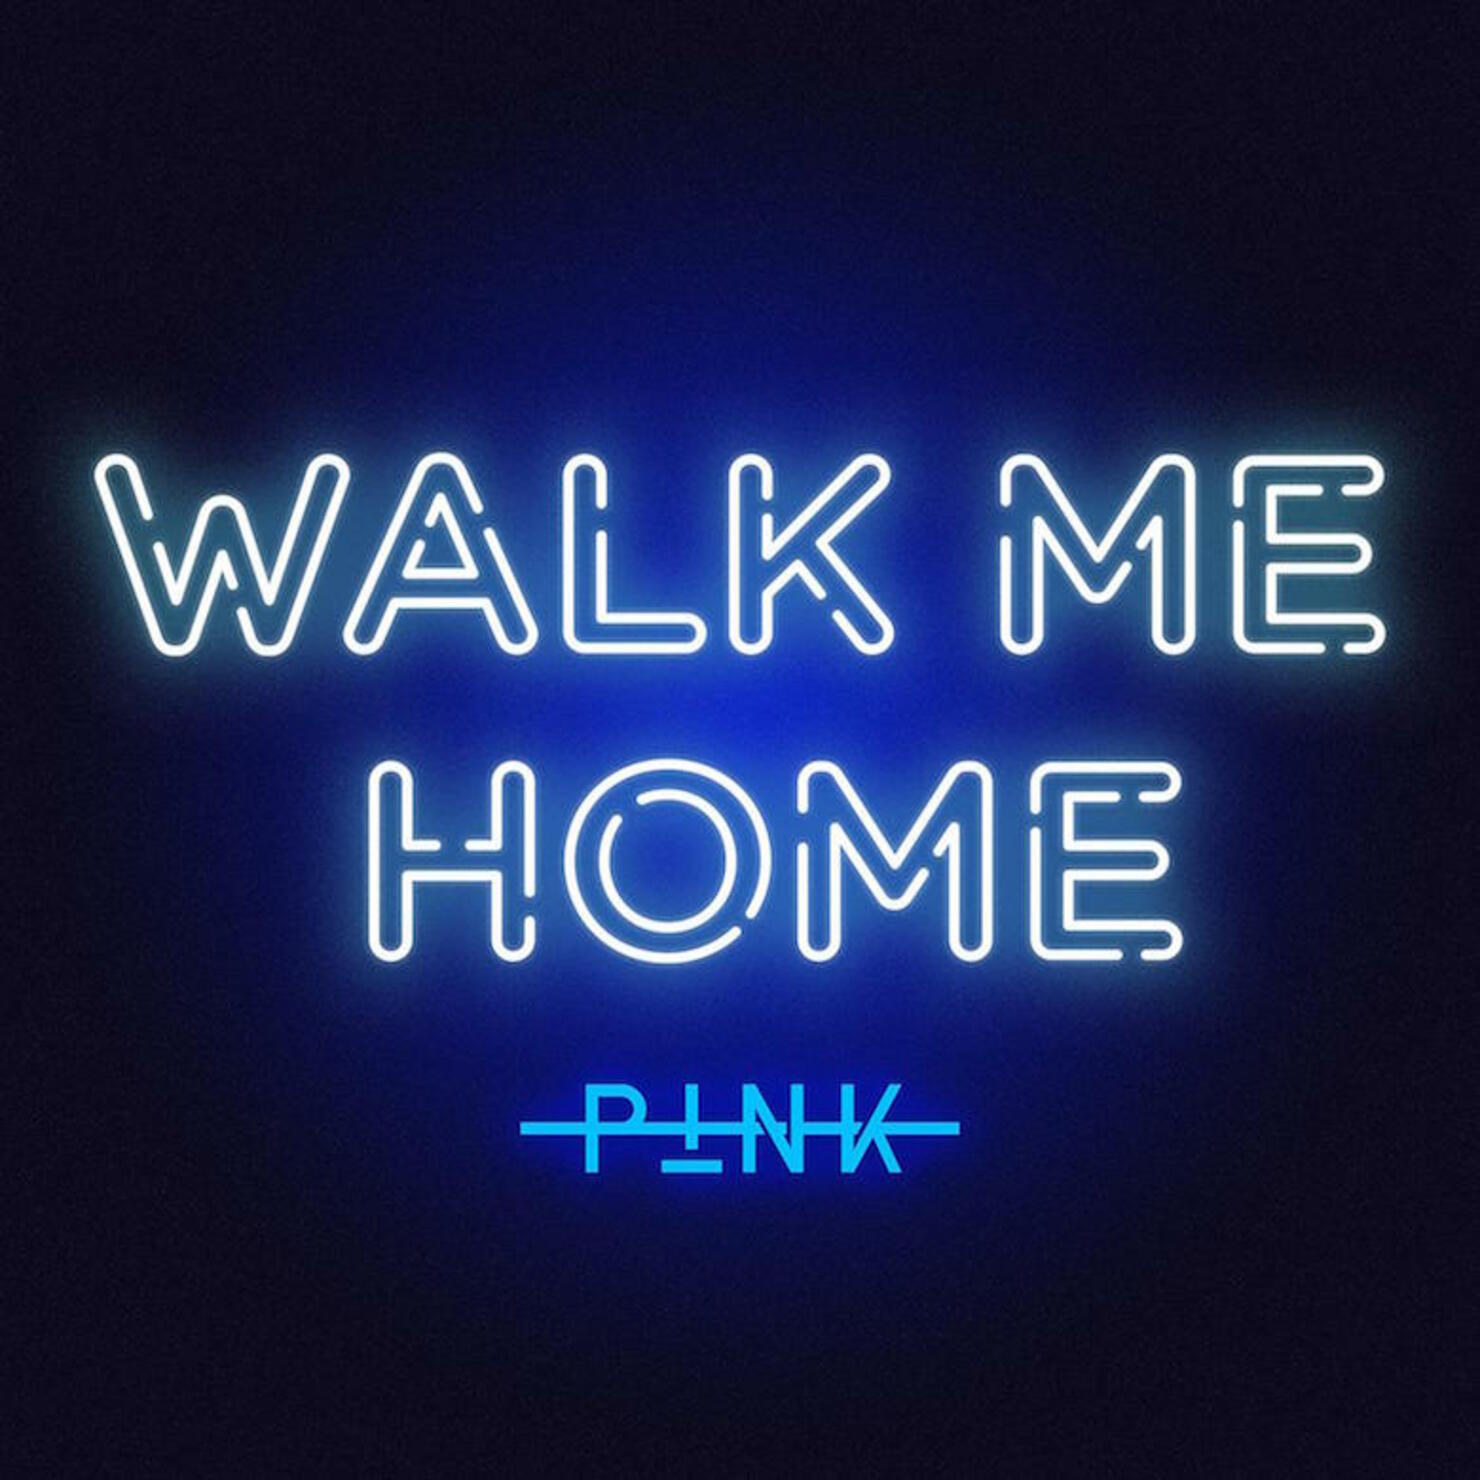 P!nk - "Walk Me Home"